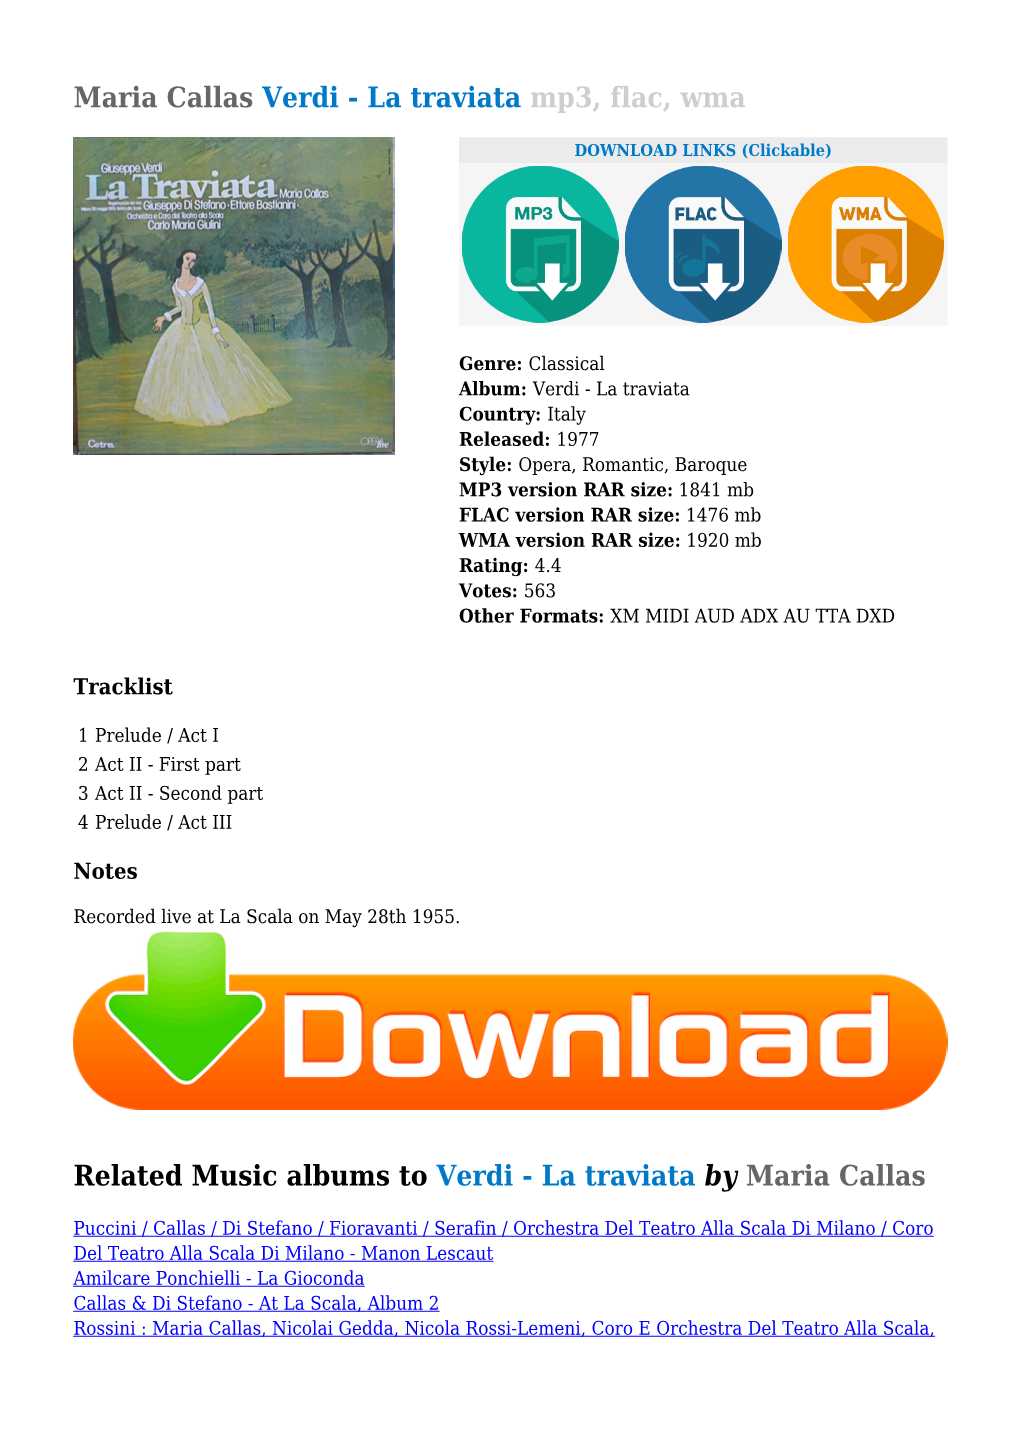 Maria Callas Verdi - La Traviata Mp3, Flac, Wma